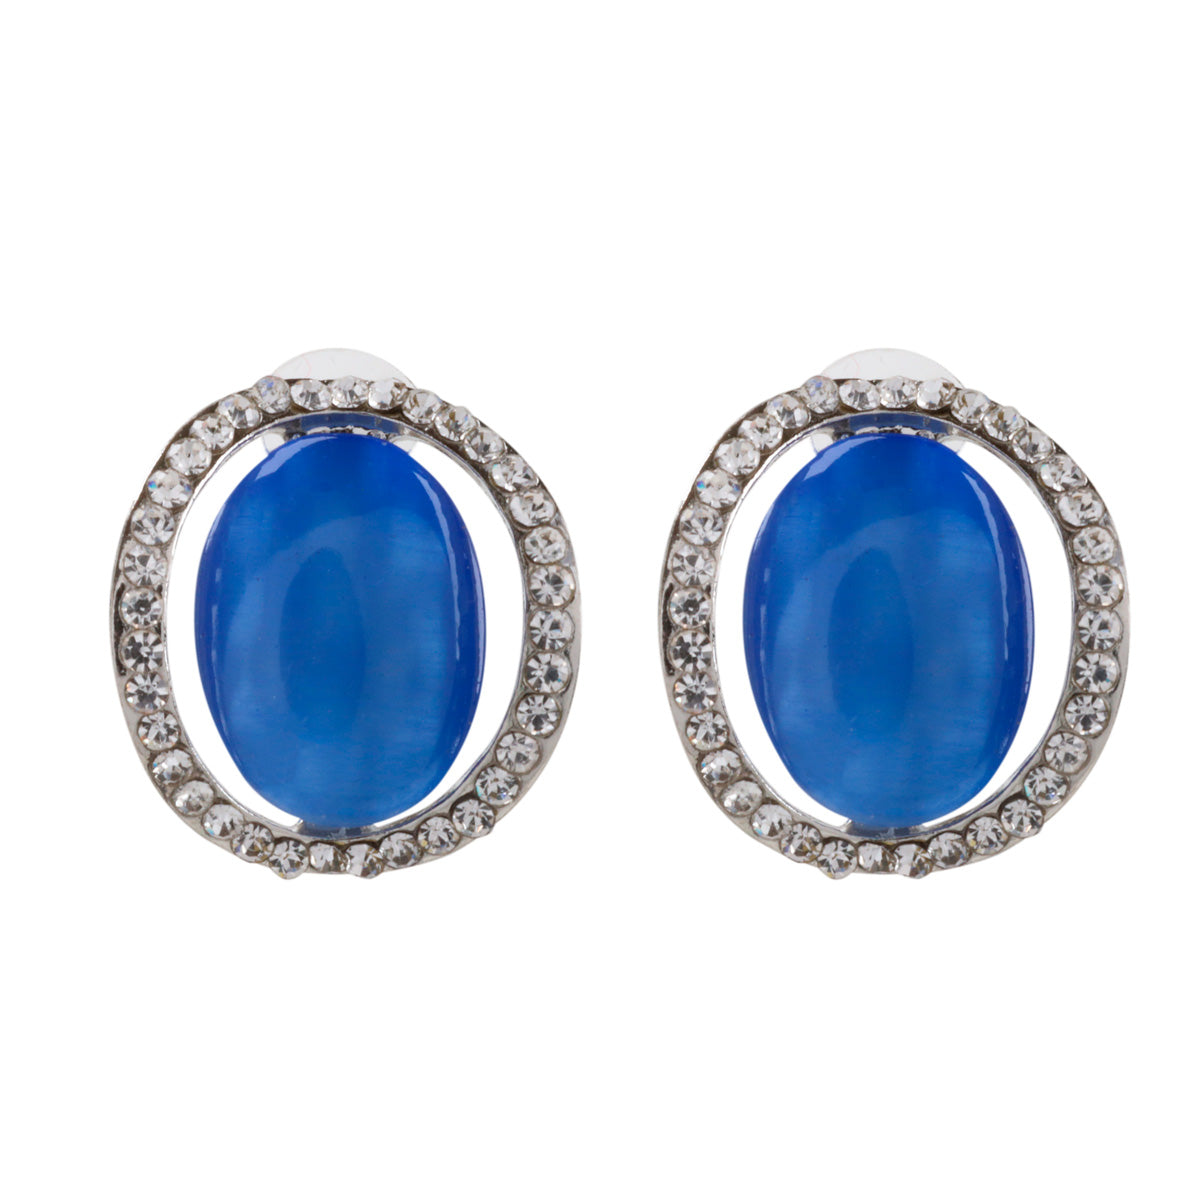 Glass oval earrings